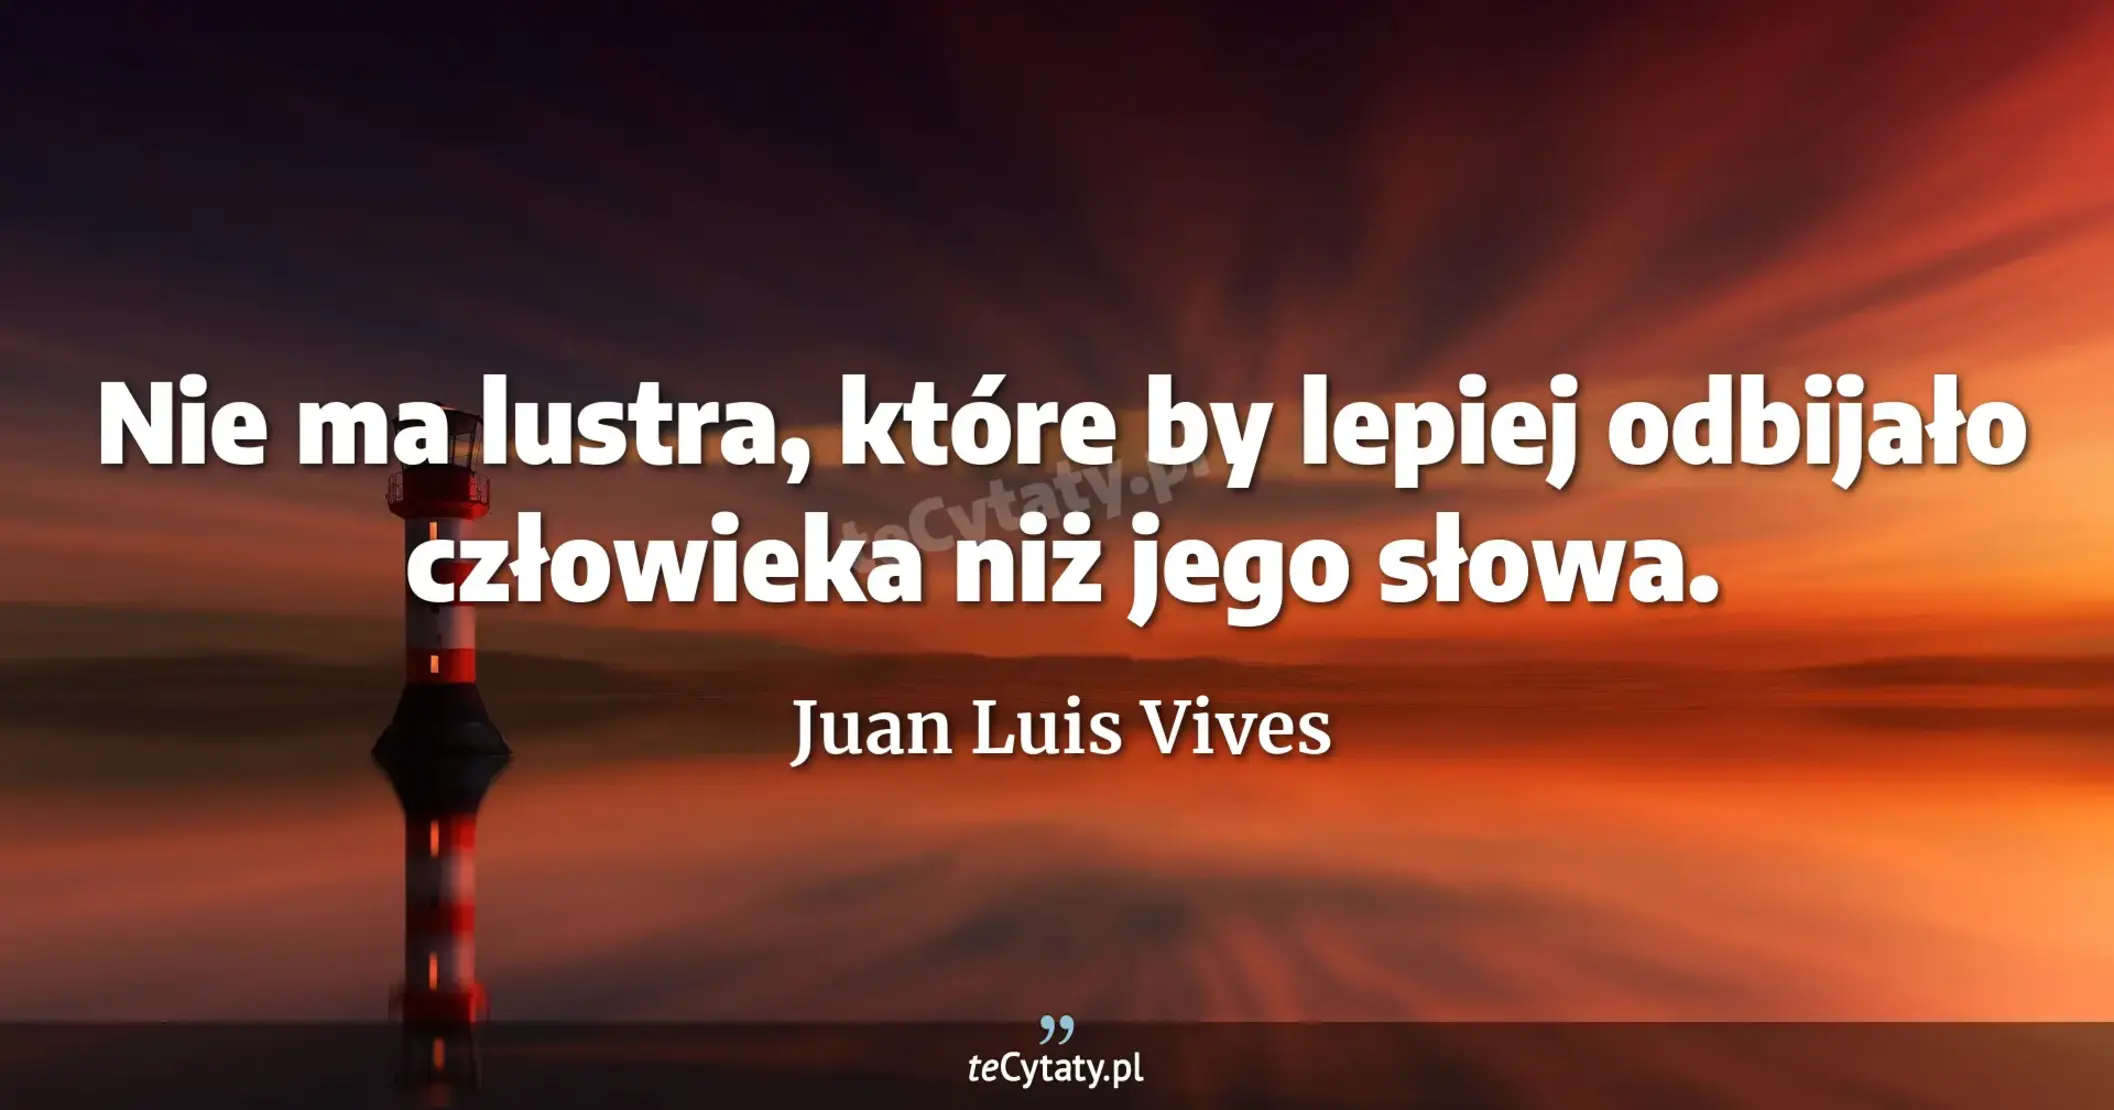 Nie ma lustra, które by lepiej odbijało człowieka niż jego słowa. - Juan Luis Vives